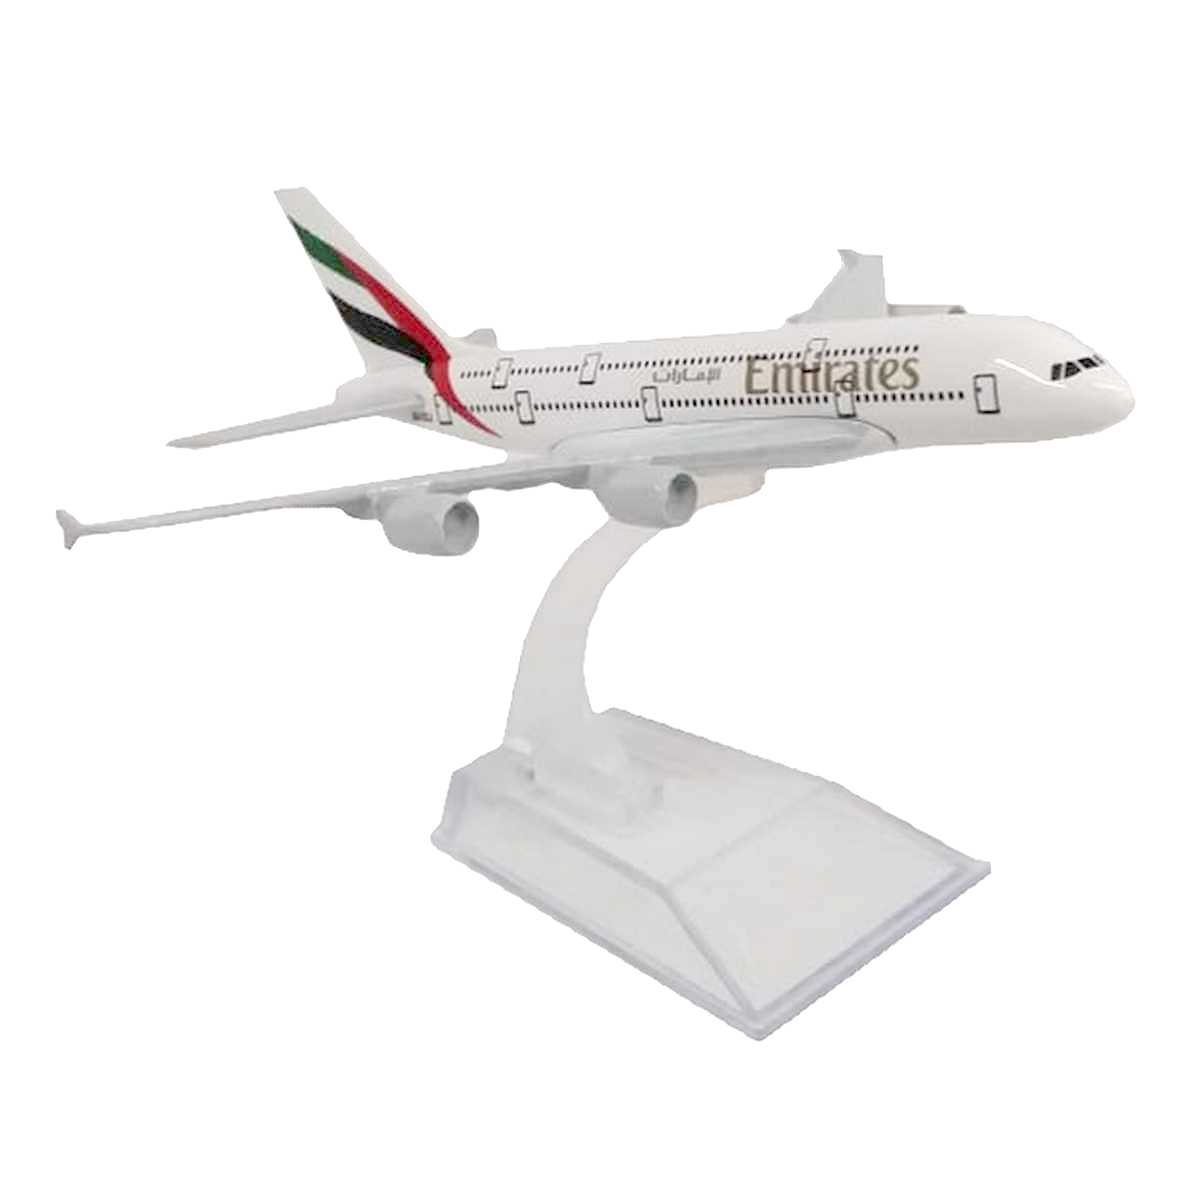 Miniatura de avião comercial Airbus A380 da Emirates airline company na caixa